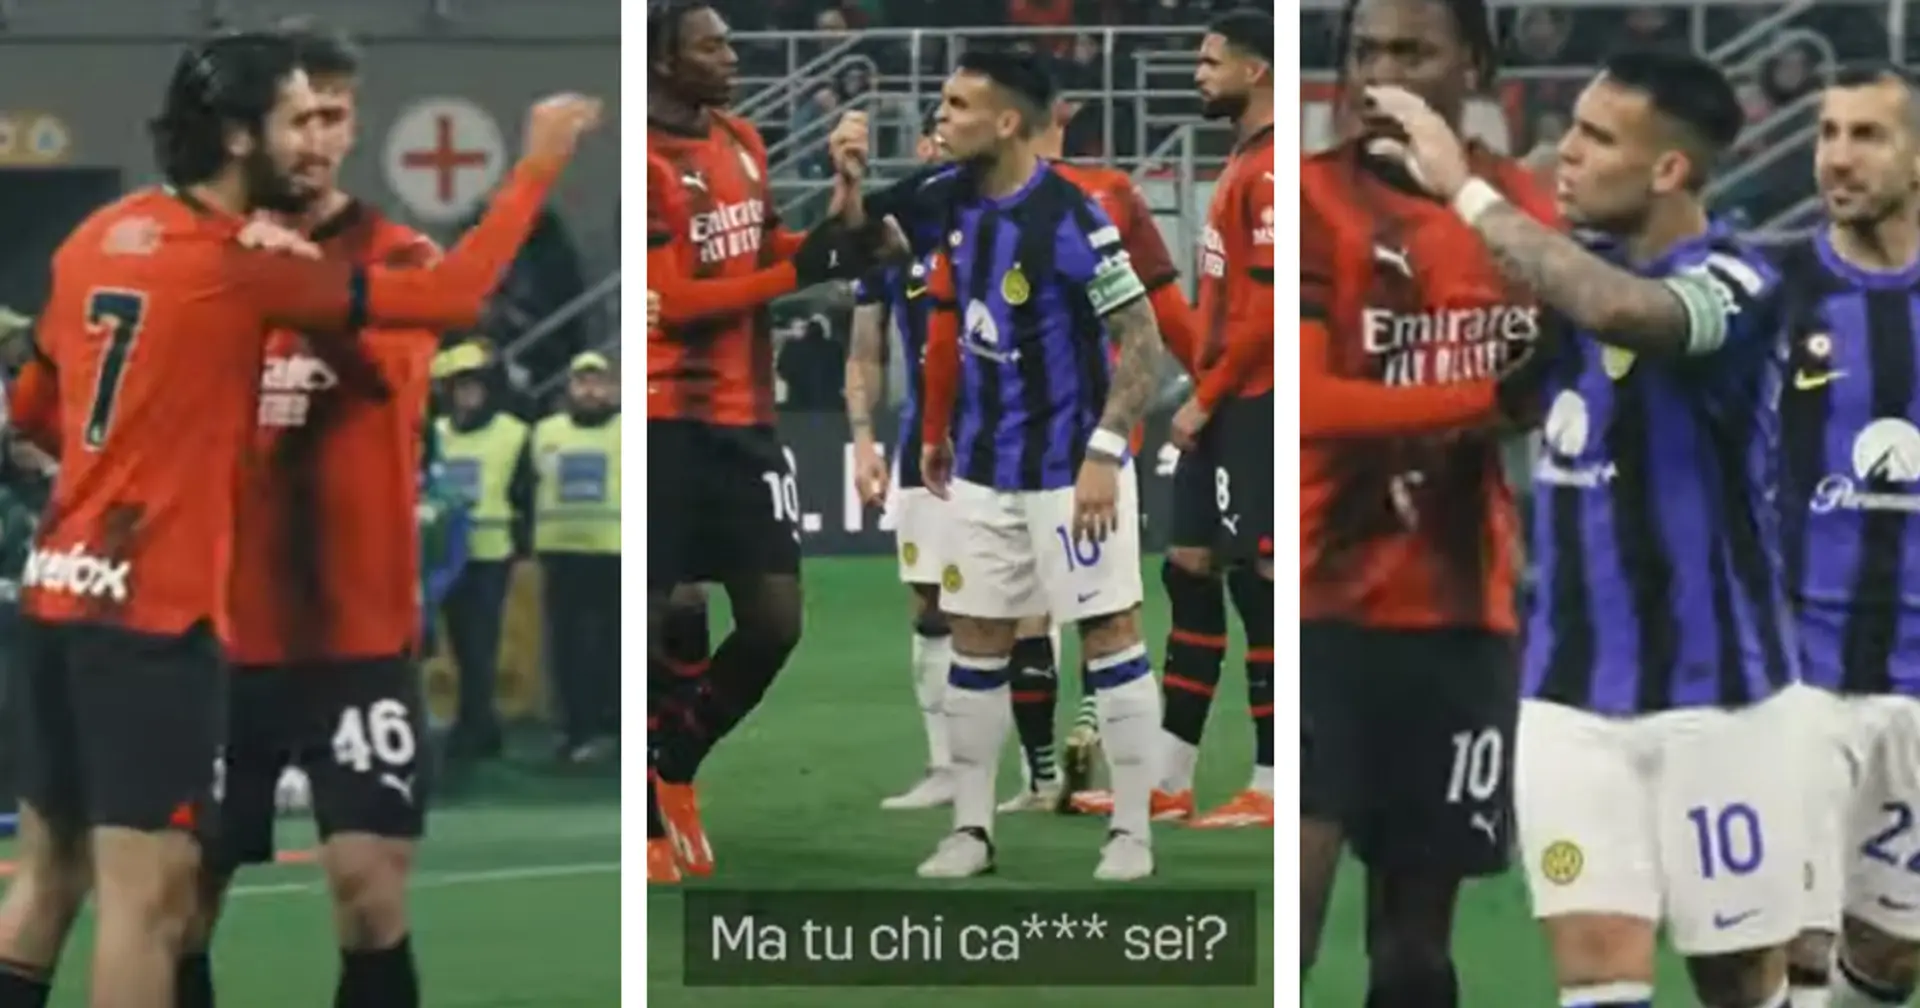 Lautaro zittisce Adli, il Capitano dell'Inter difende Barella nel derby: "Tu chi c*** sei?!" - VIDEO